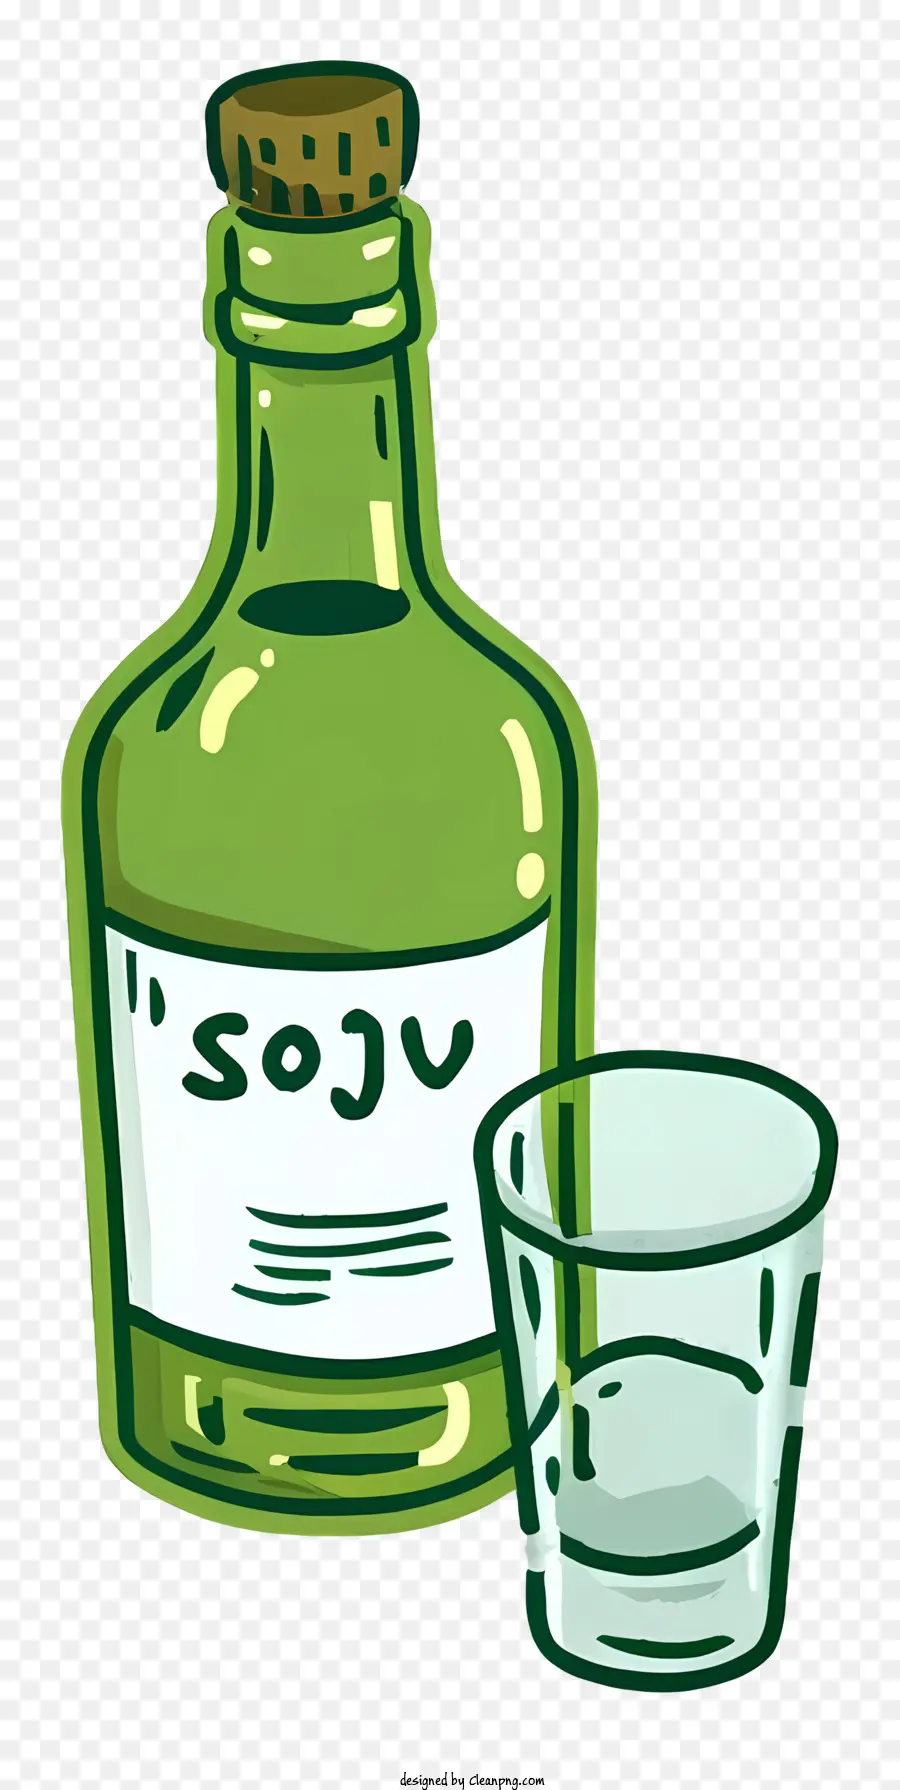 Sake Flasche Soju Glasgrün - Grüne Soju -Flasche, Glas mit Sake, schwarzer Hintergrund